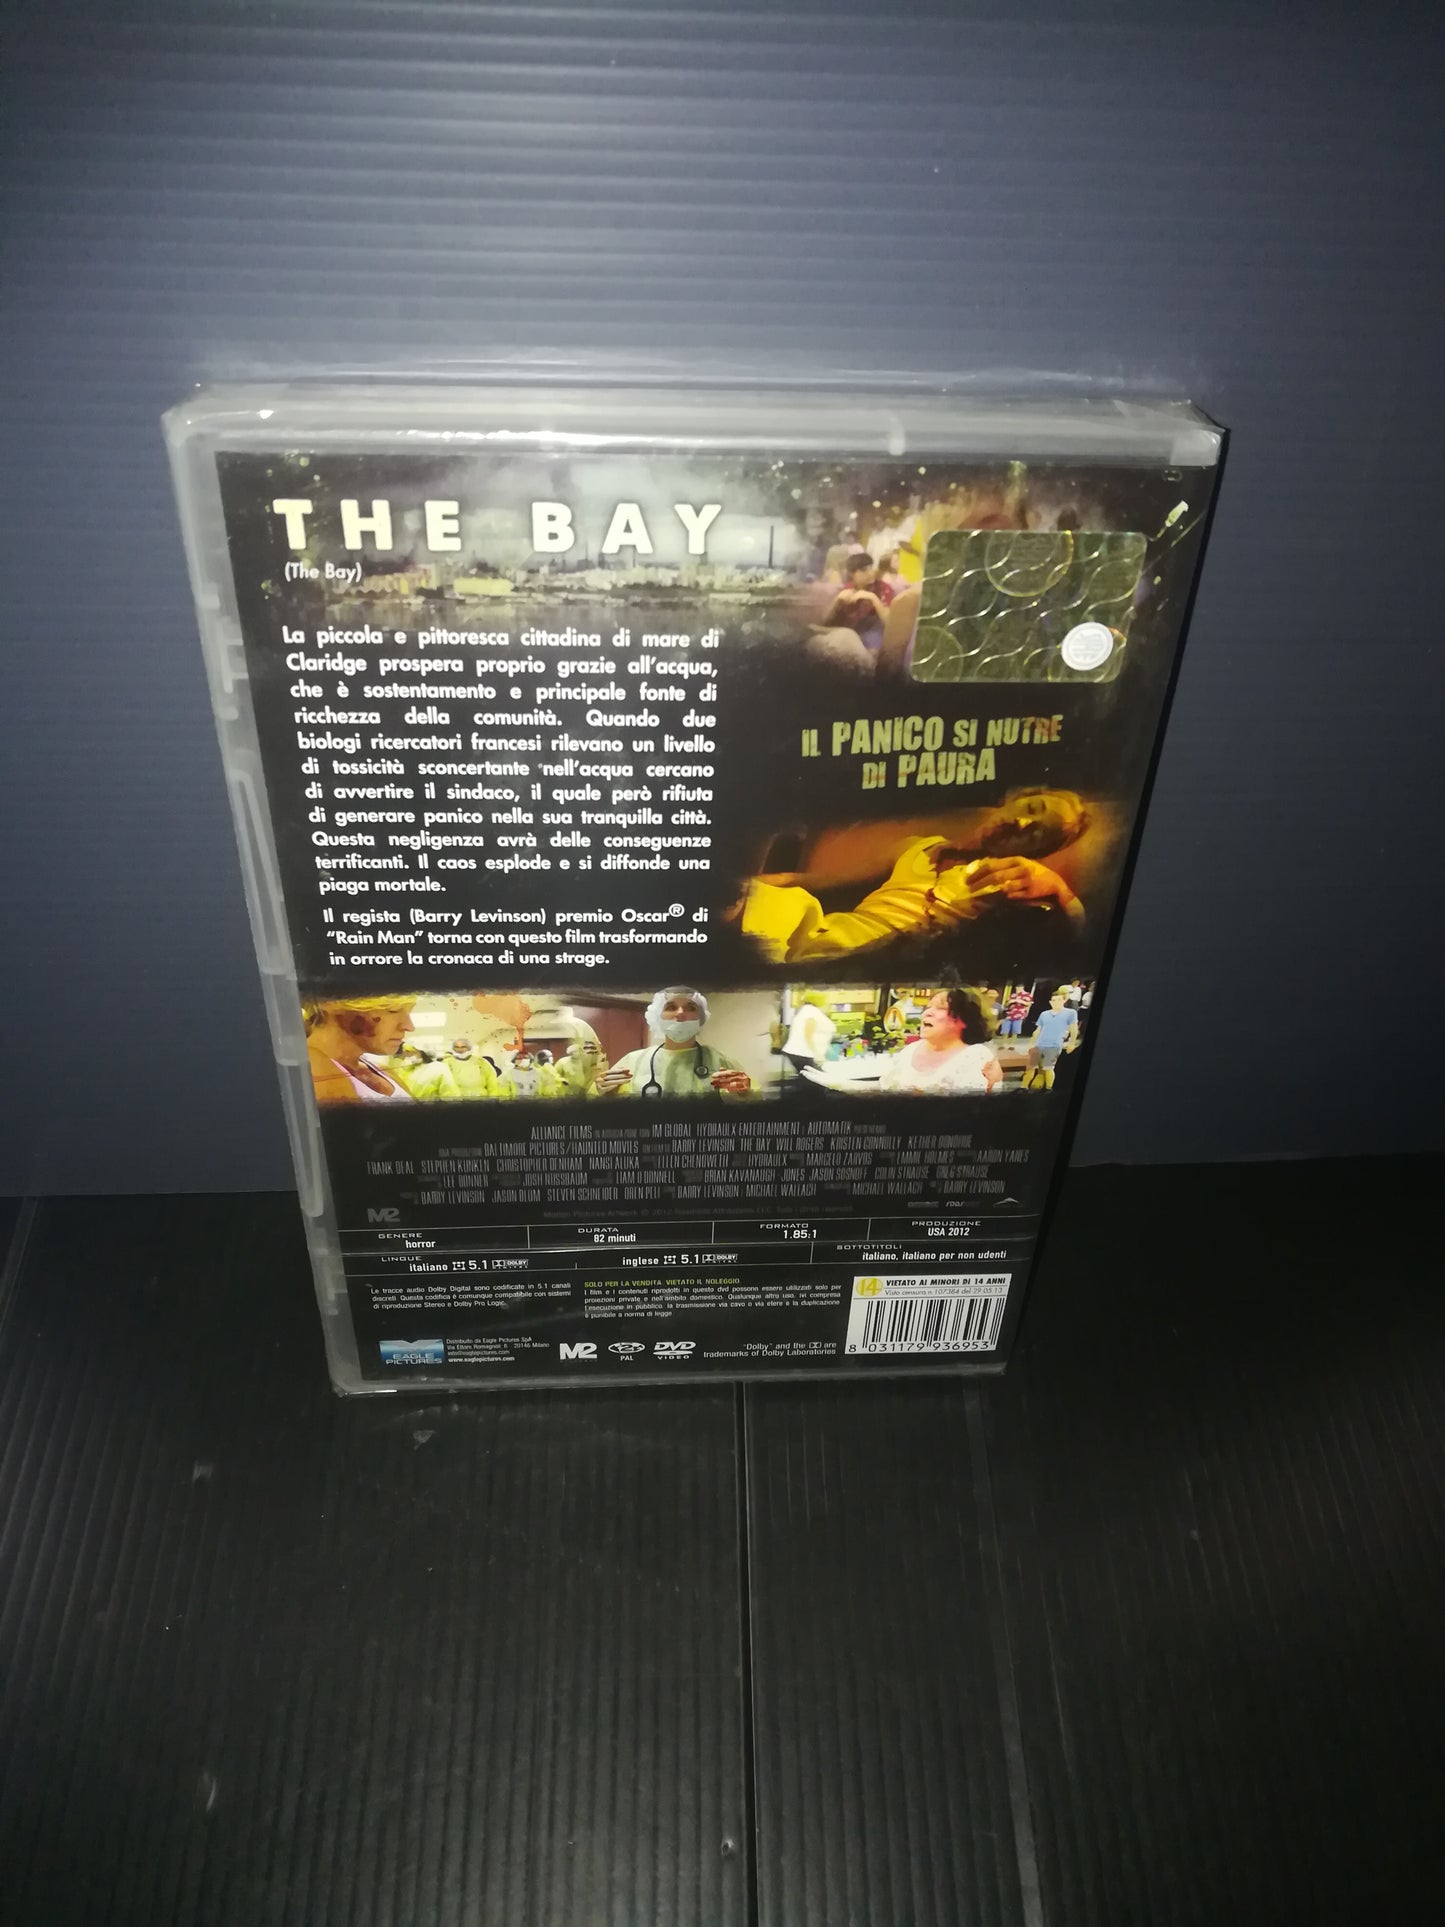 "The Bay" DVD